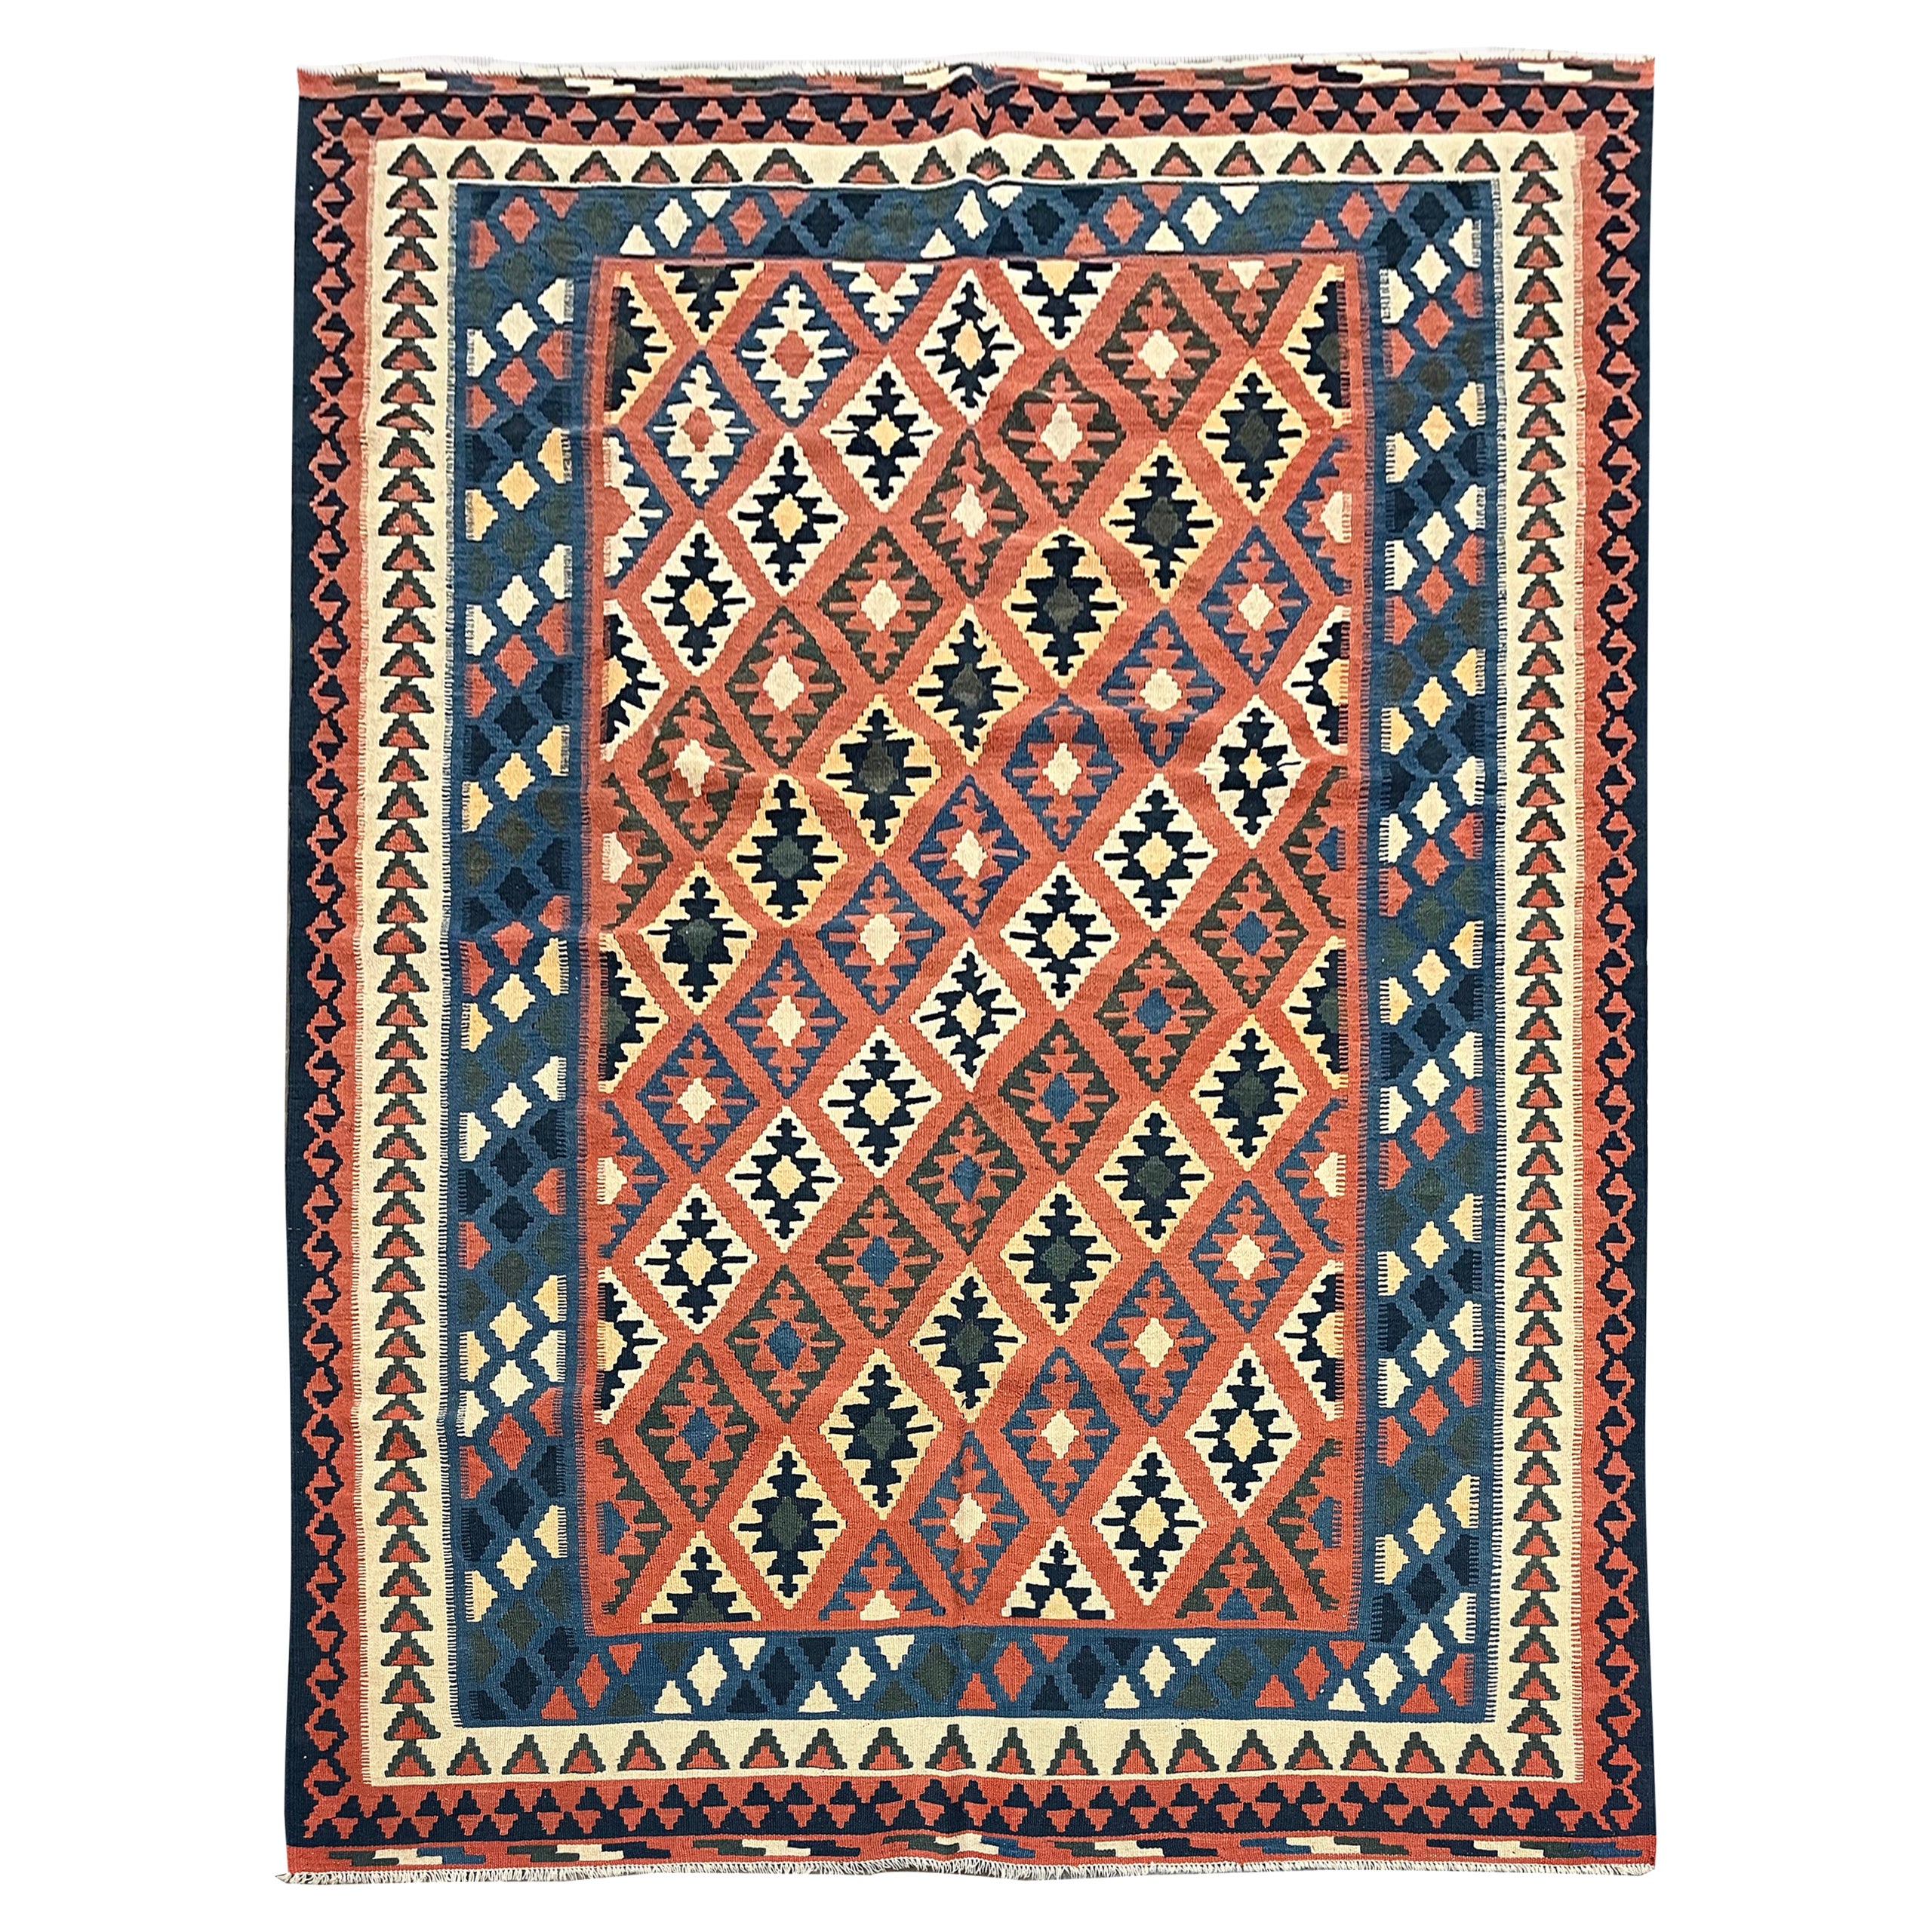 Vintage Kilim Rug Geometric Striped Orange Wool Rug Handmade Kilims